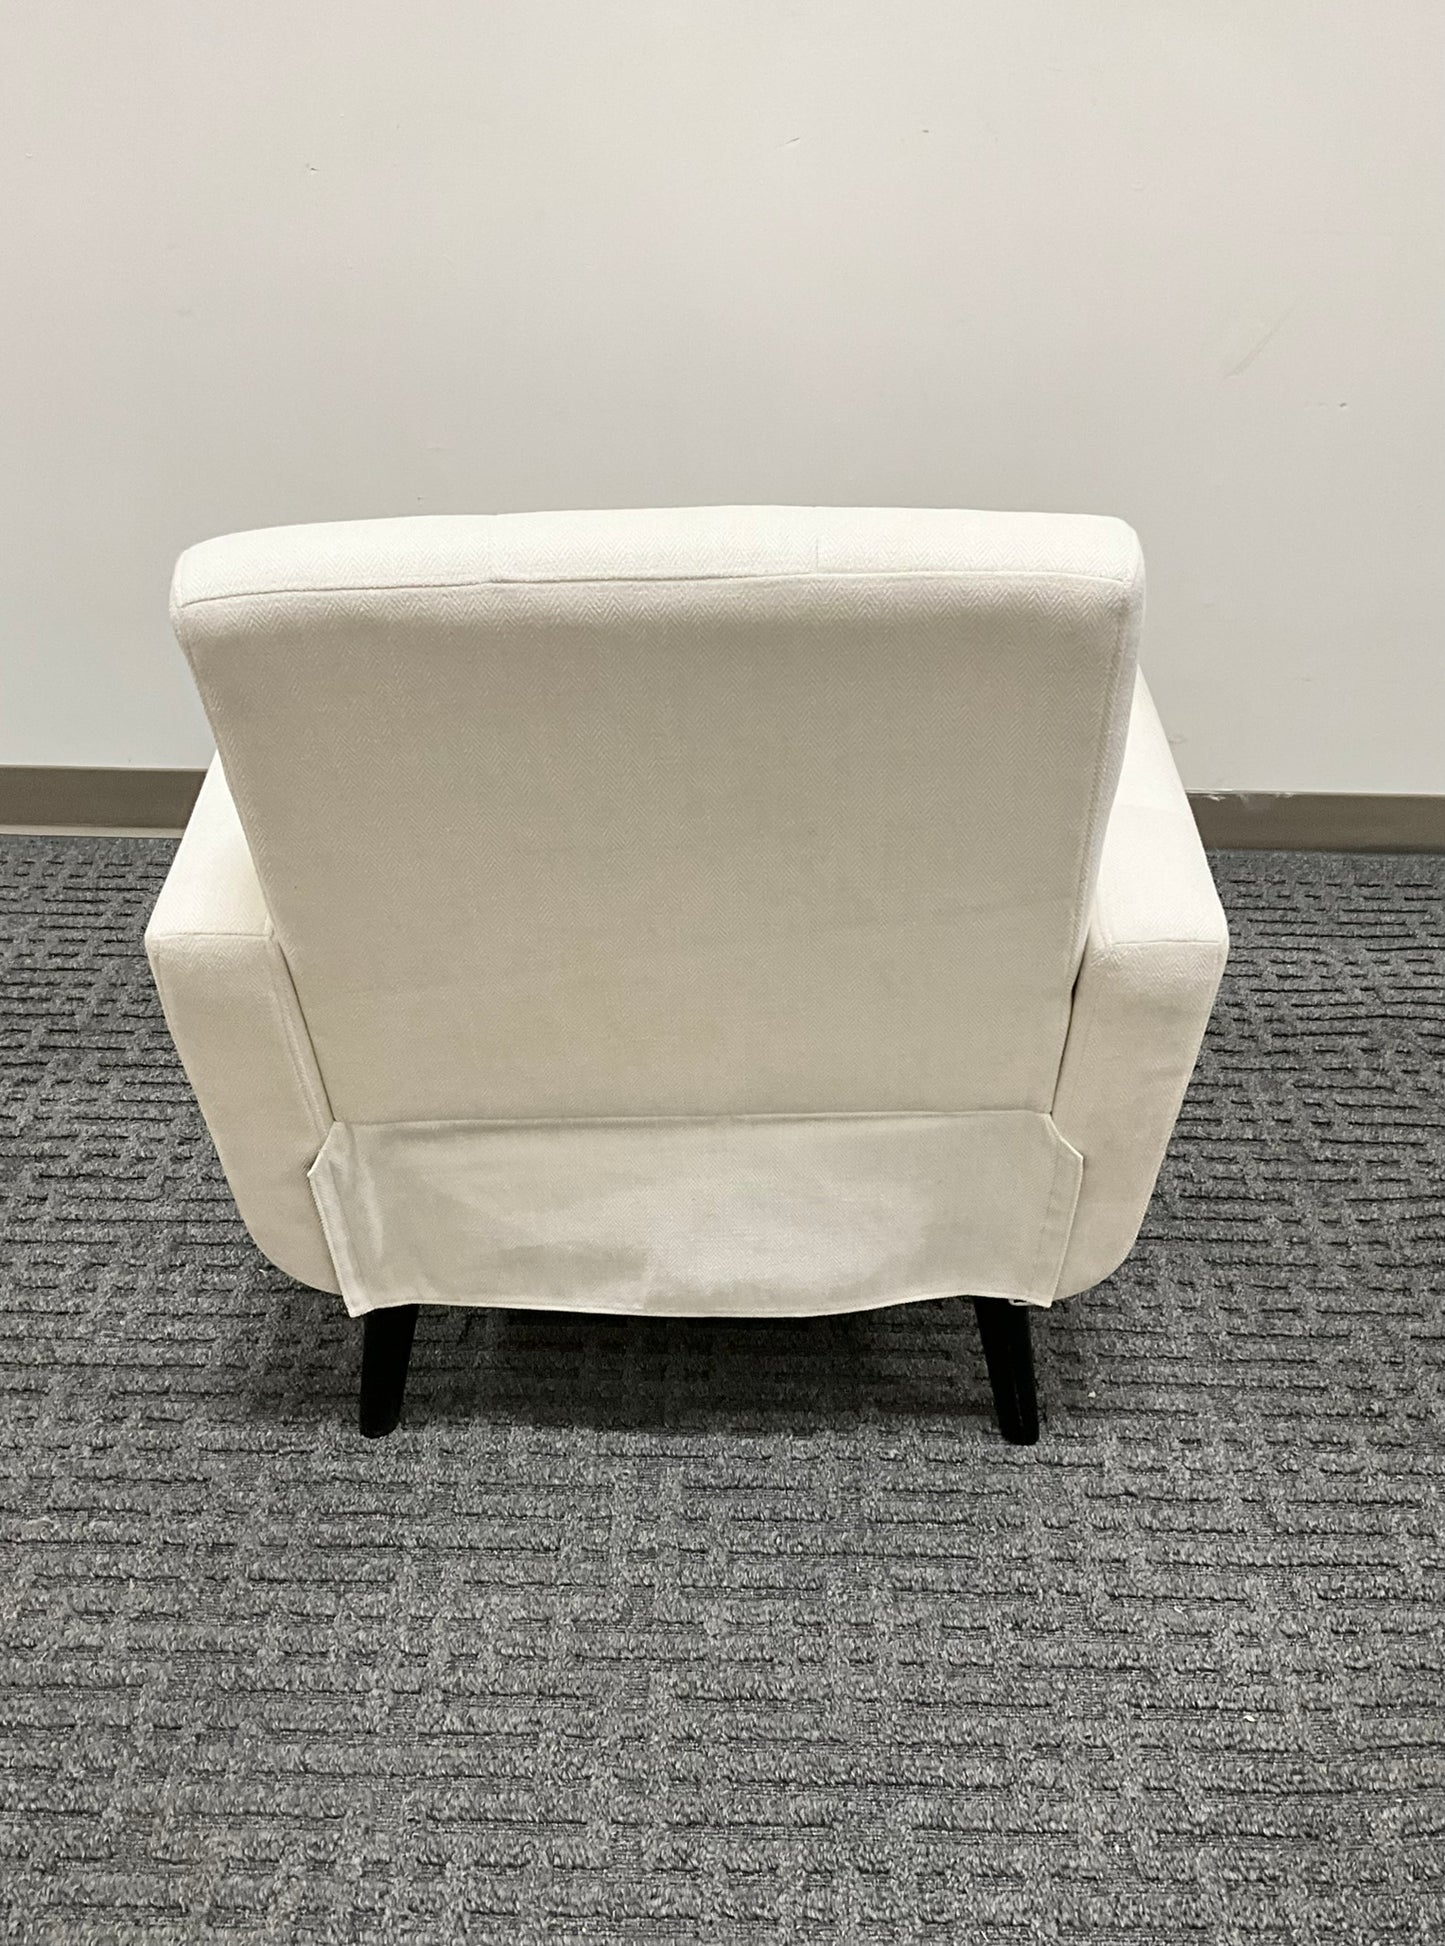 White Chair New) 28”X26”X26”